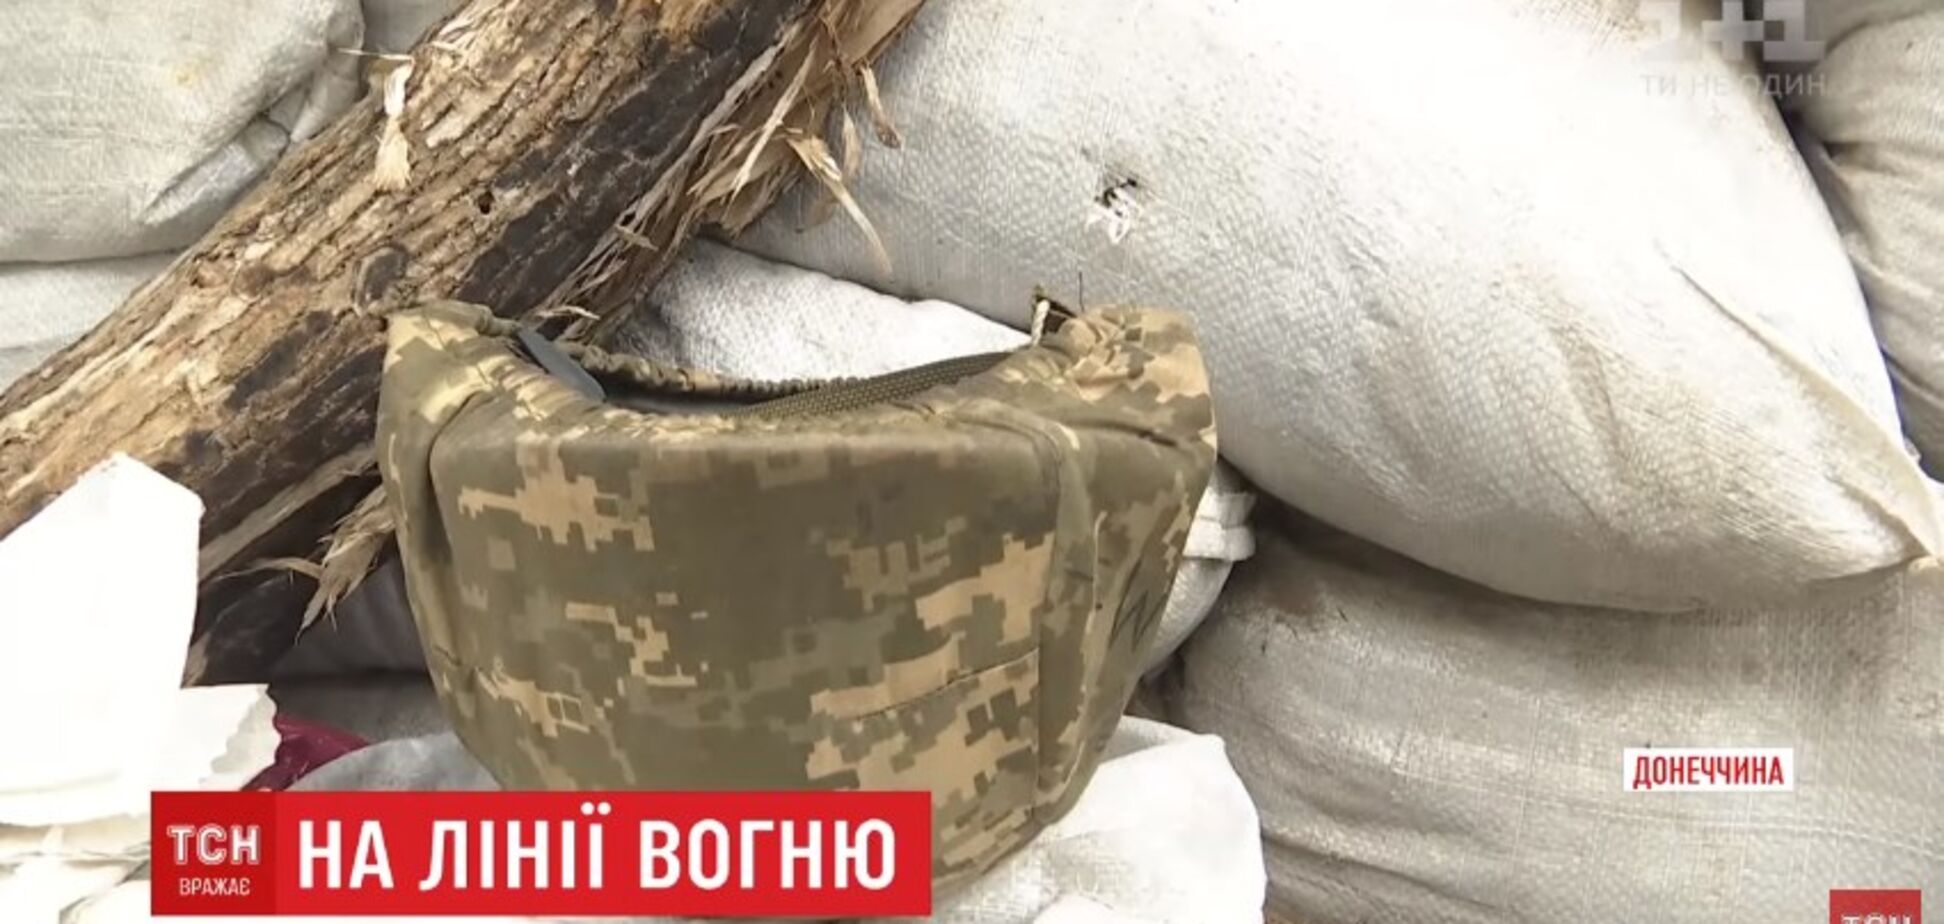 'Особливий почерк': снайпери терористів почали полювання на українських офіцерів на Донбасі